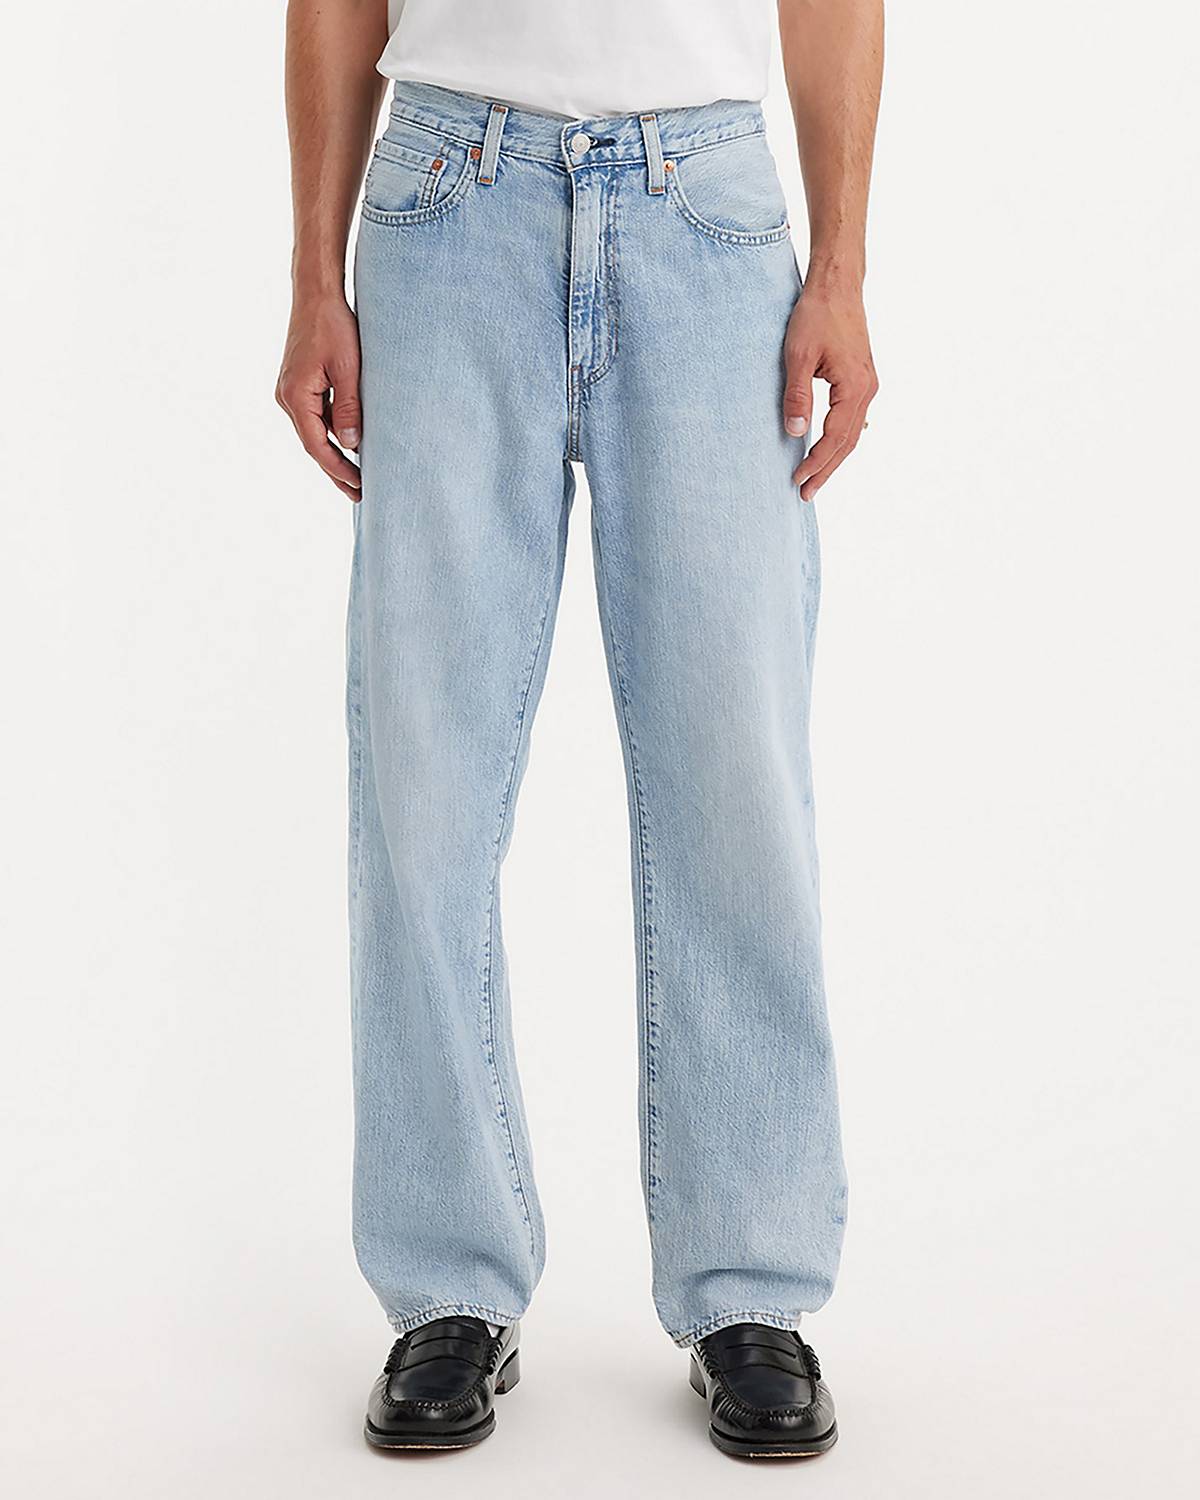 Levi's® 510 - Shop Skinny Jeans for Men